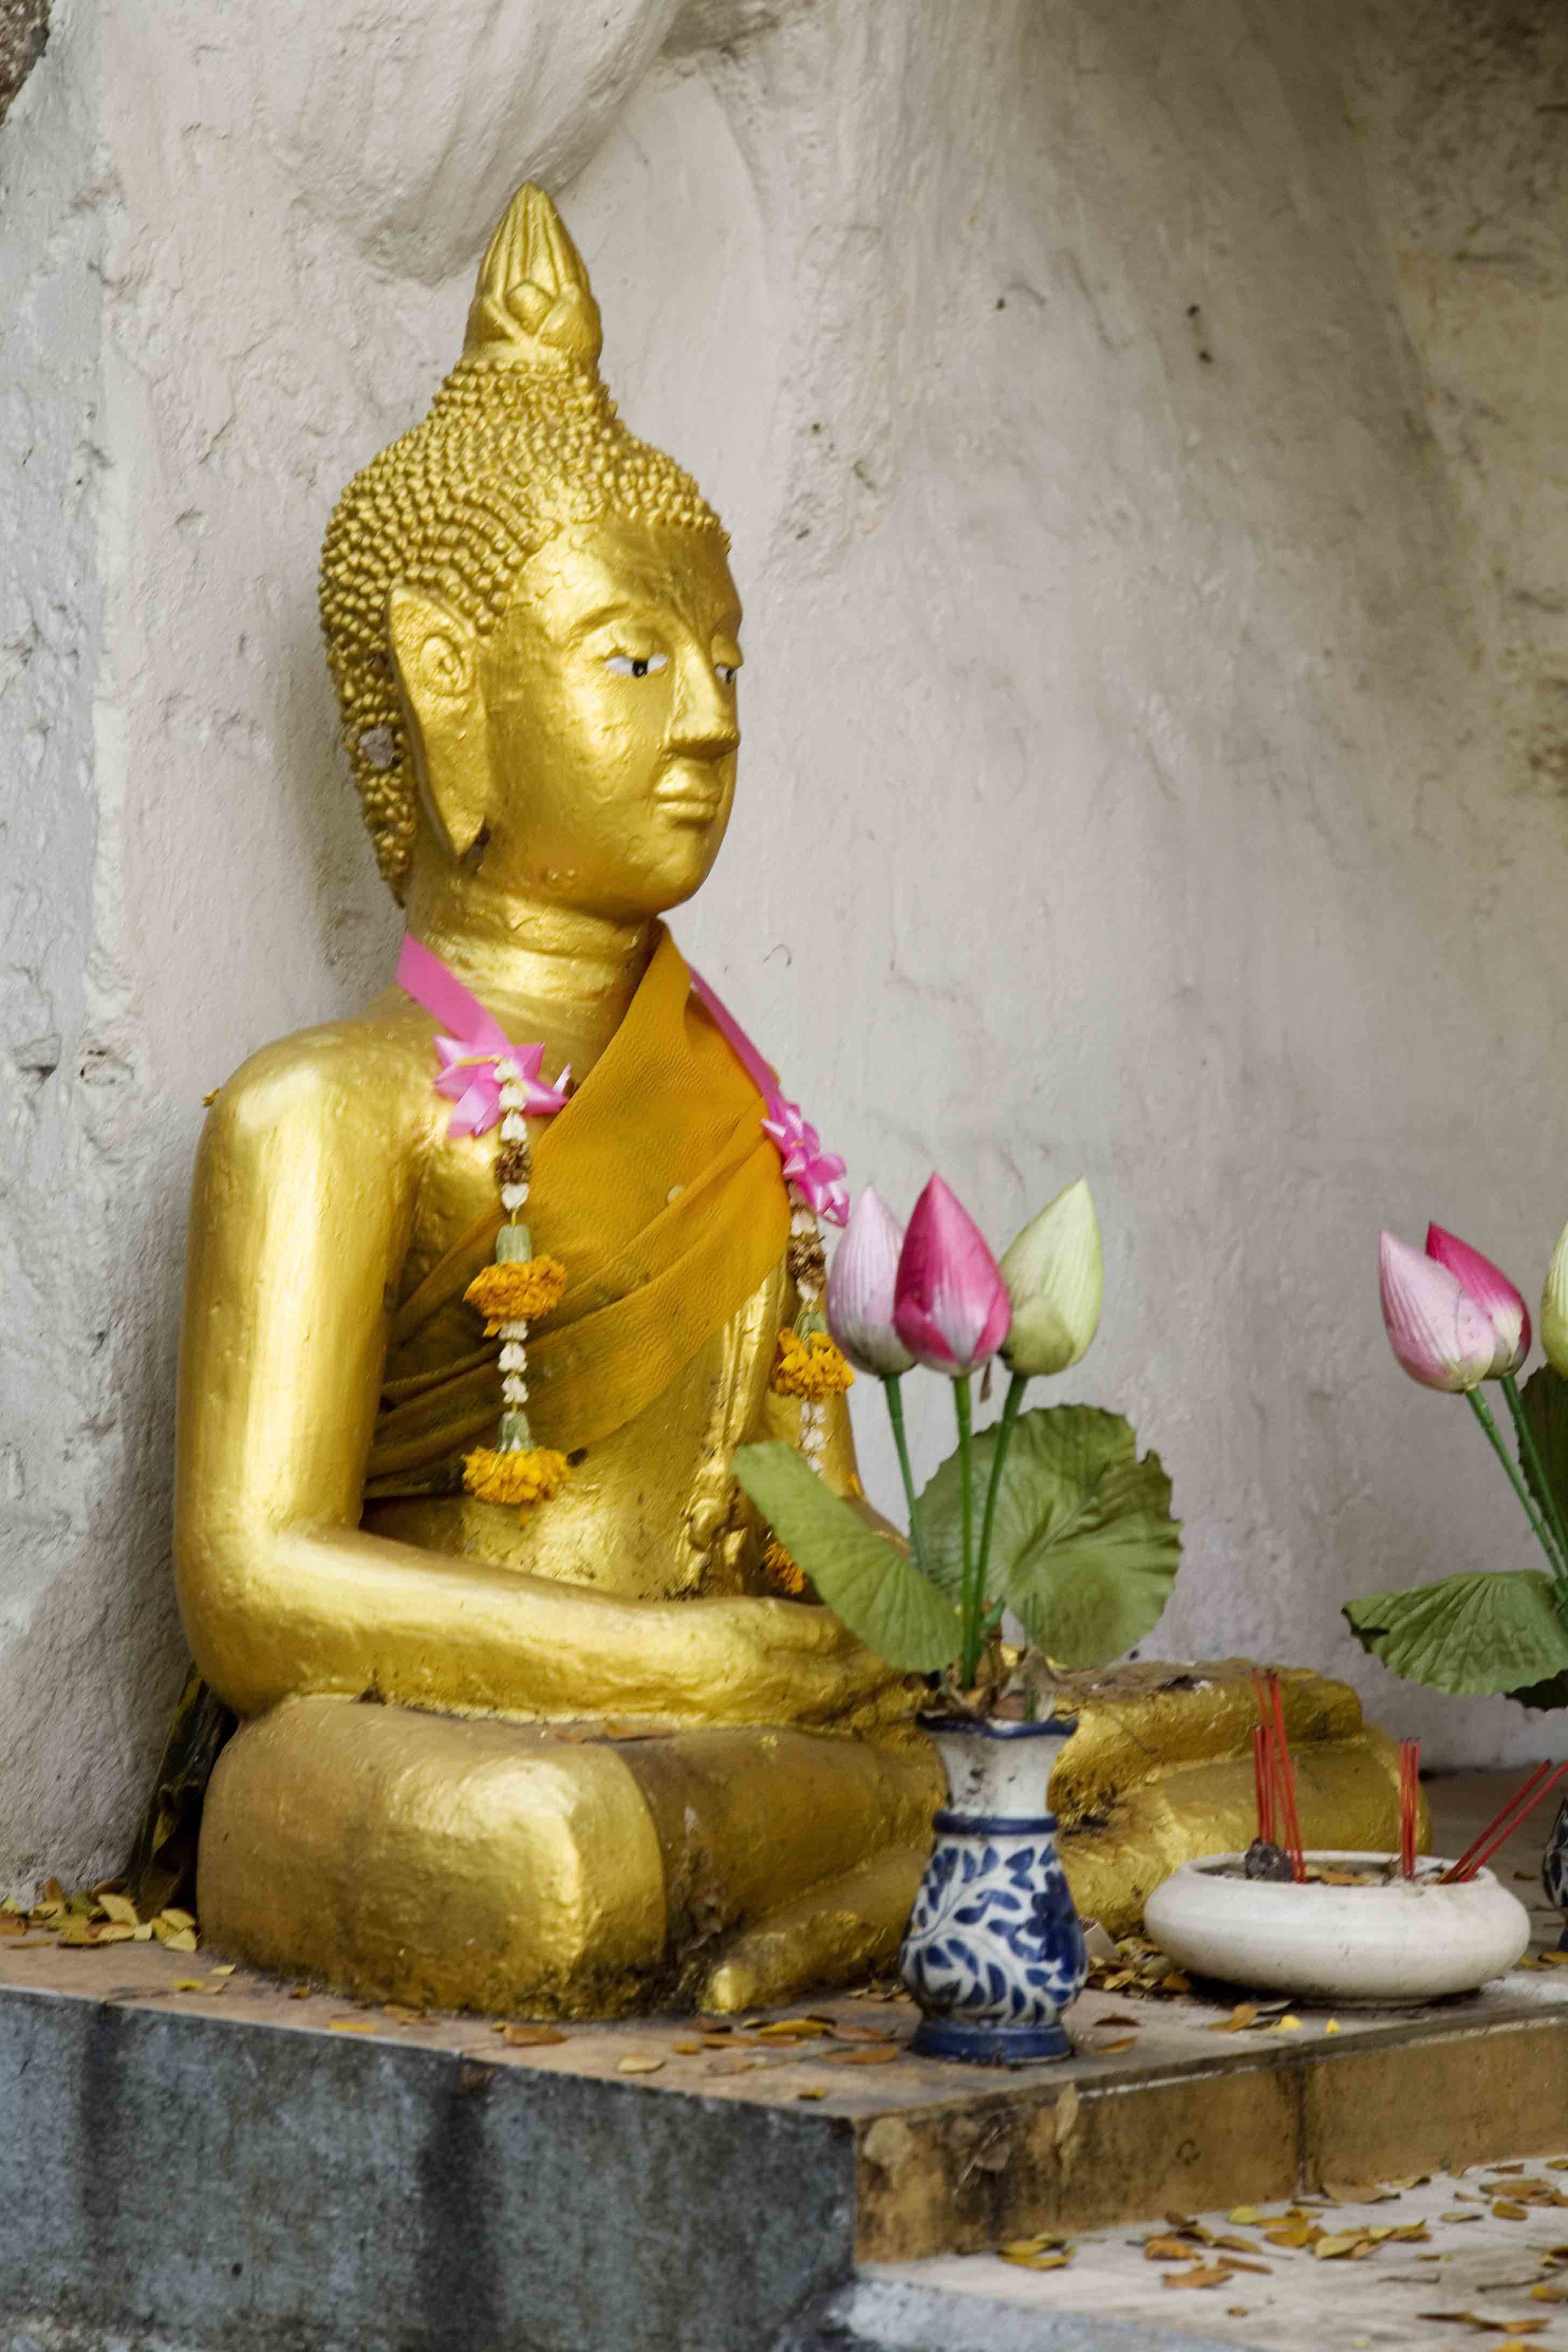 A-Golden Mount Buddha Image 1A.jpg